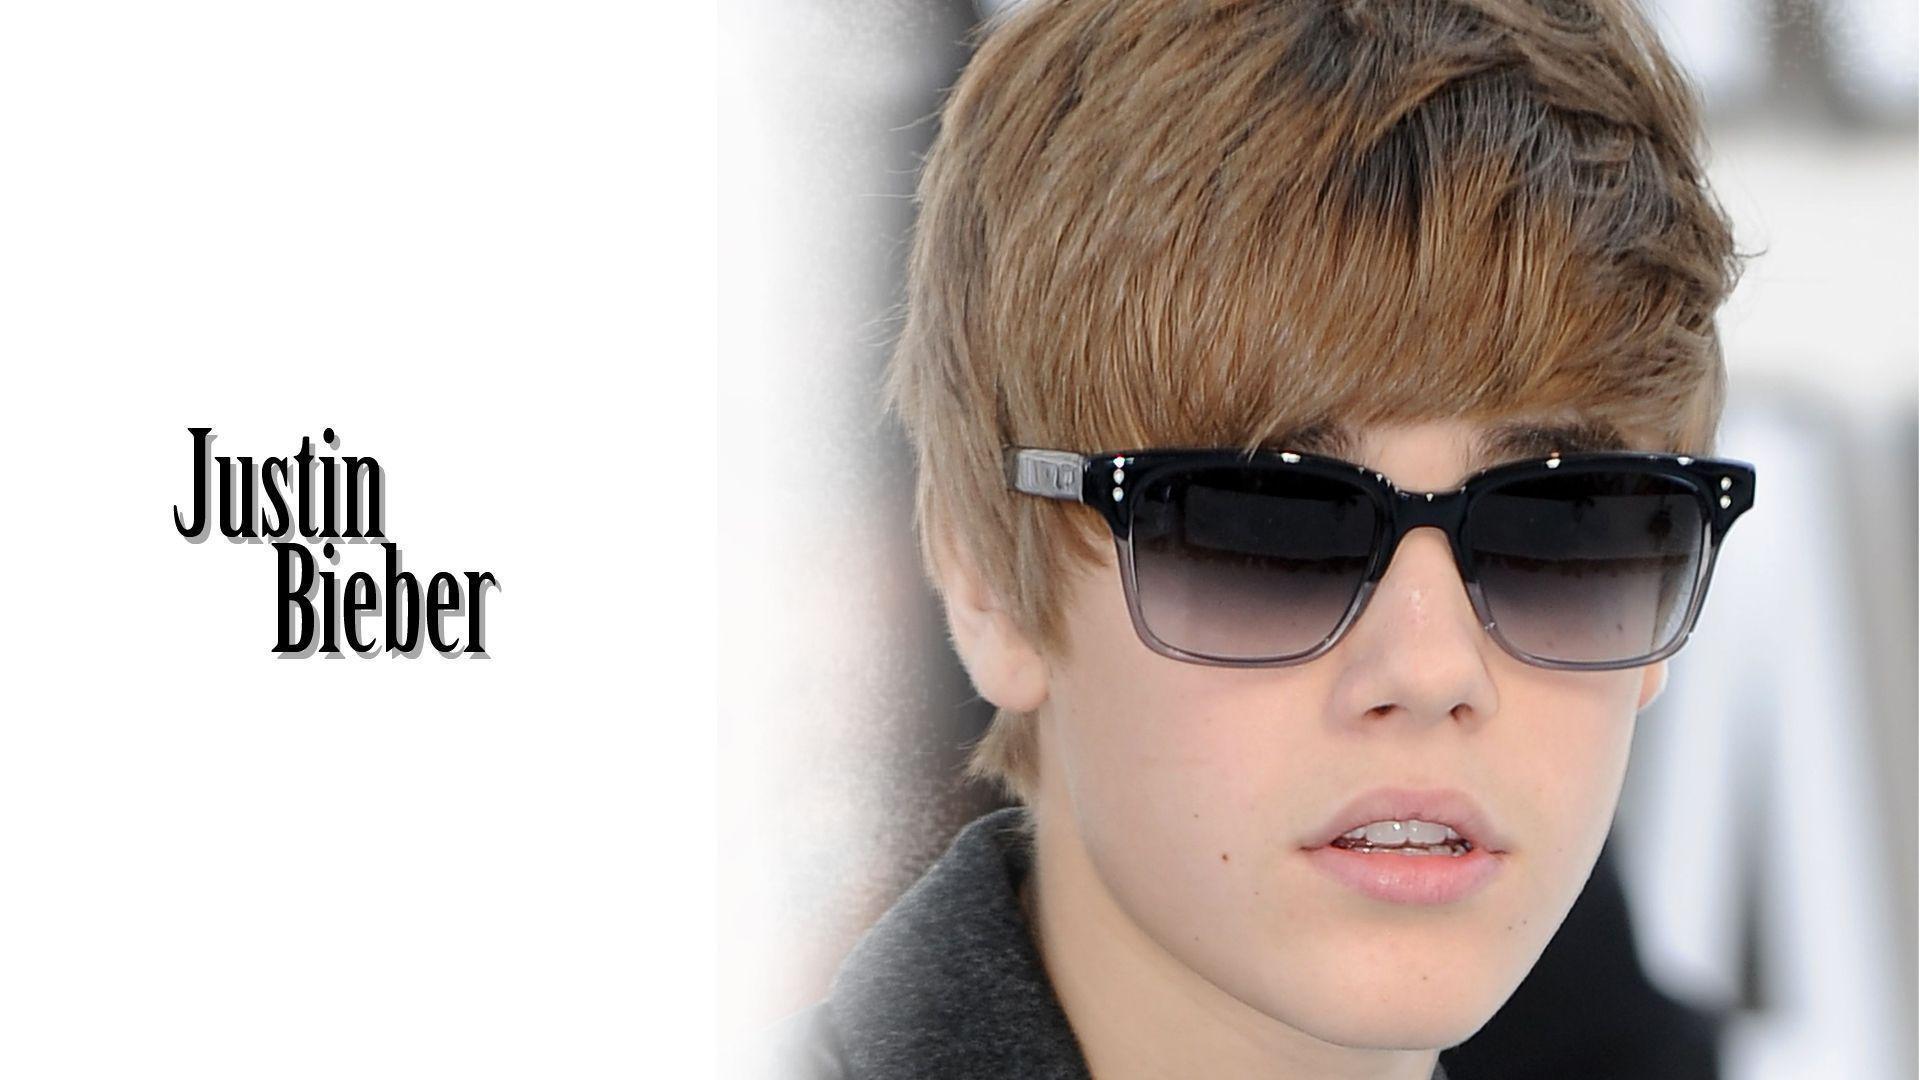 Fondos de Justin Bieber, Wallpaper y fotos de Justin Bieber